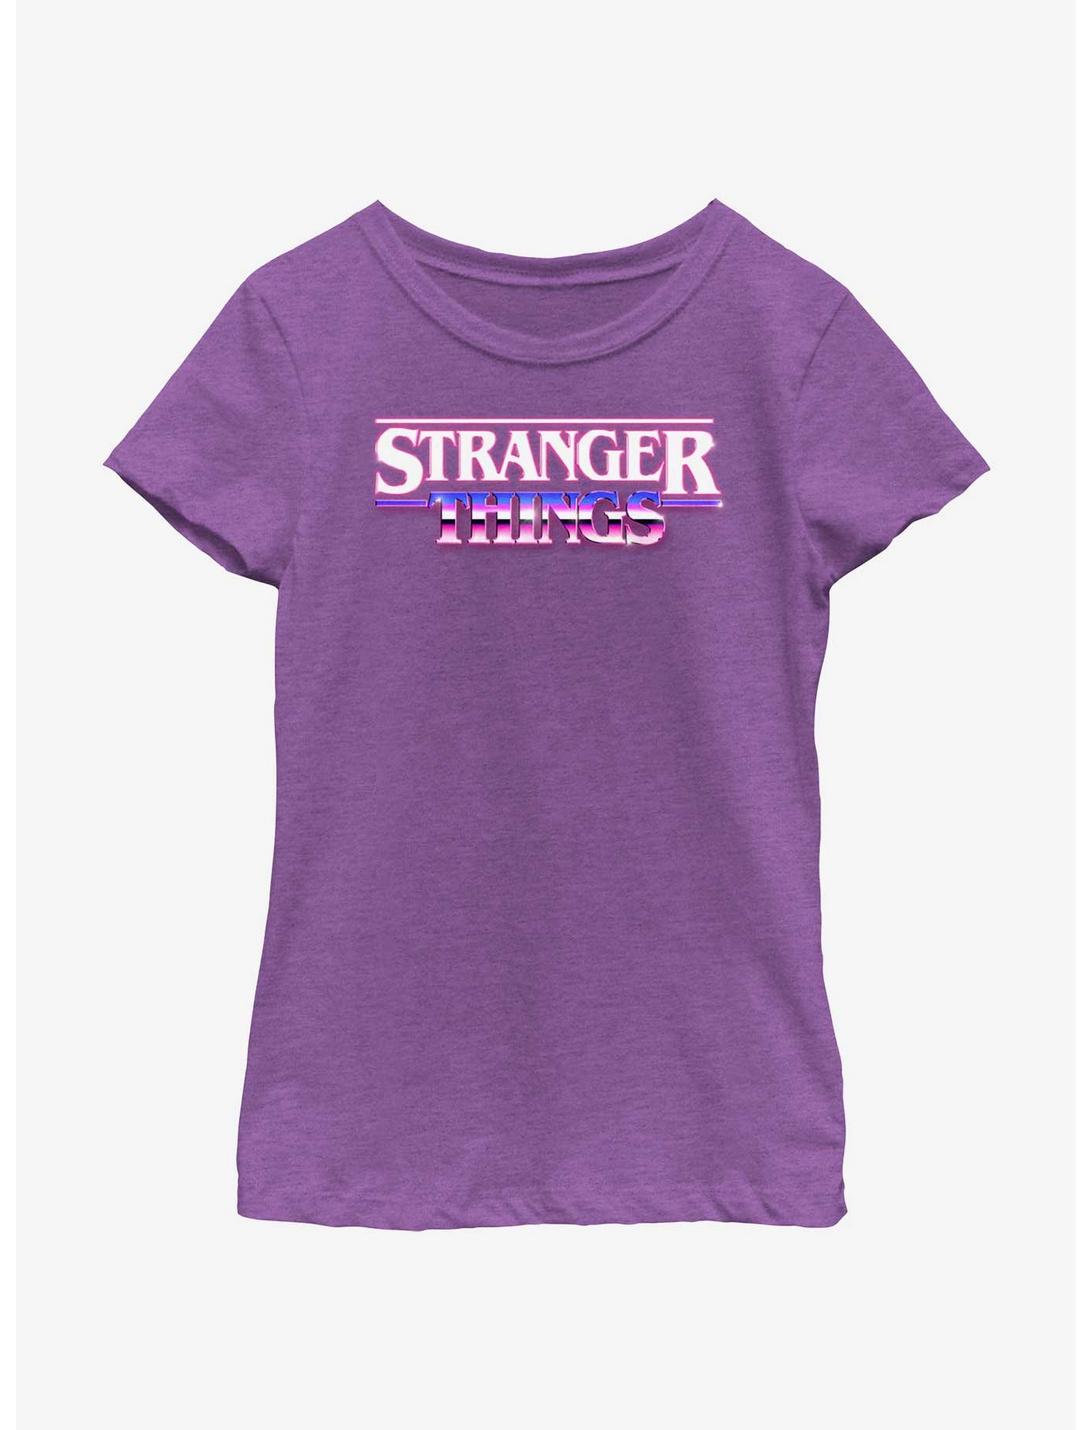 Stranger Things Metallic Logo Youth Girls T-Shirt, PURPLE BERRY, hi-res